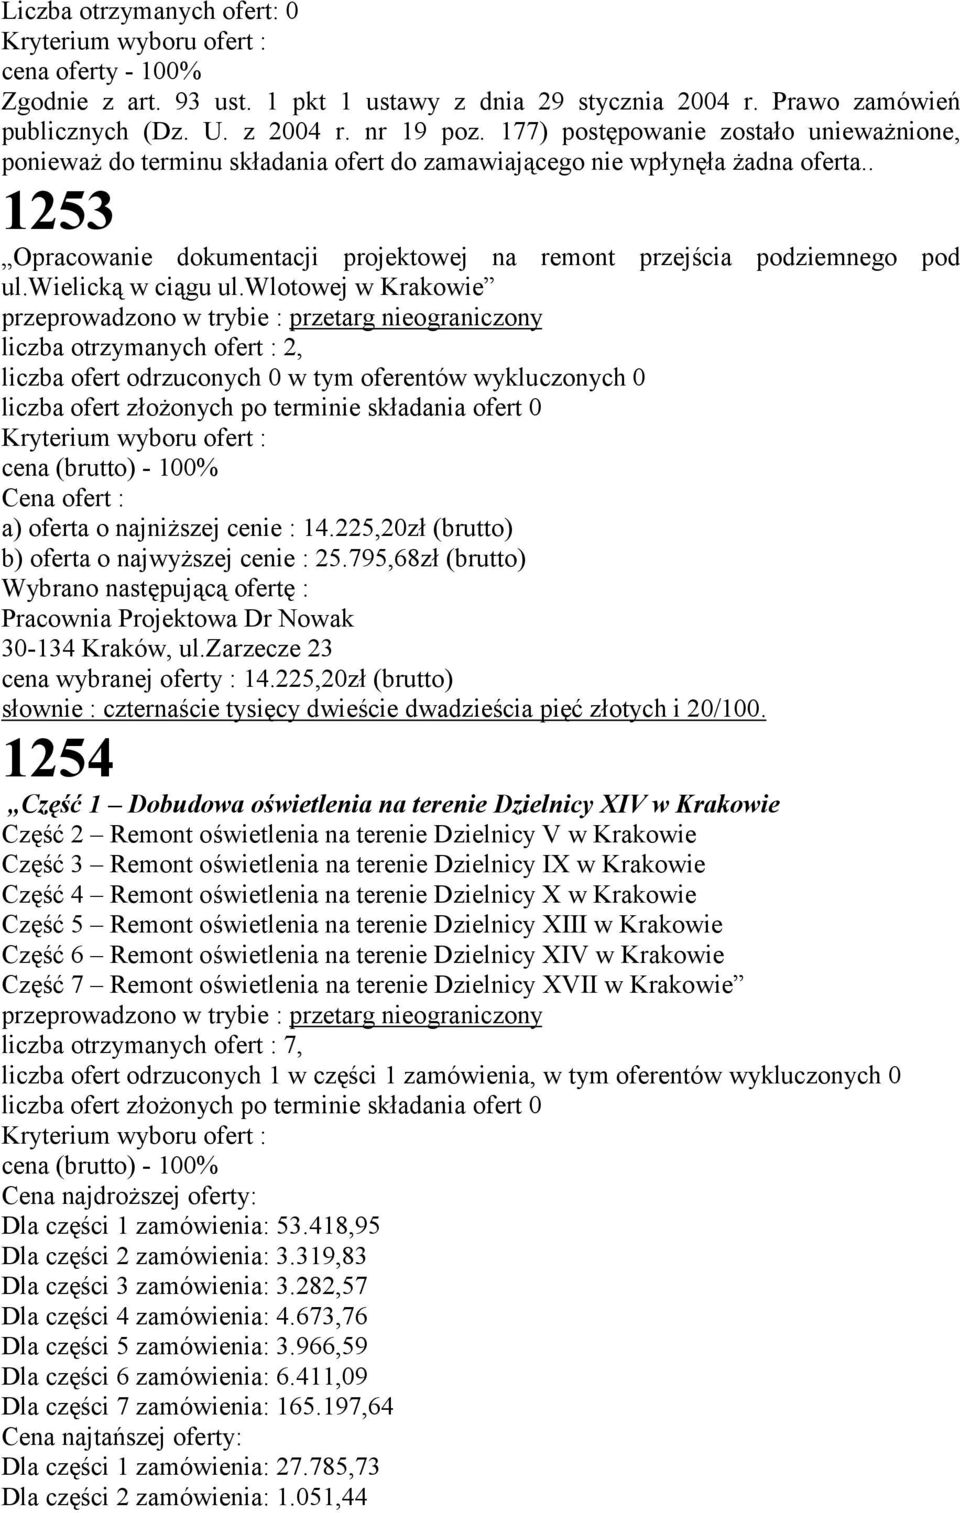 . 1253 Opracowanie dokumentacji projektowej na remont przejścia podziemnego pod ul.wielicką w ciągu ul.